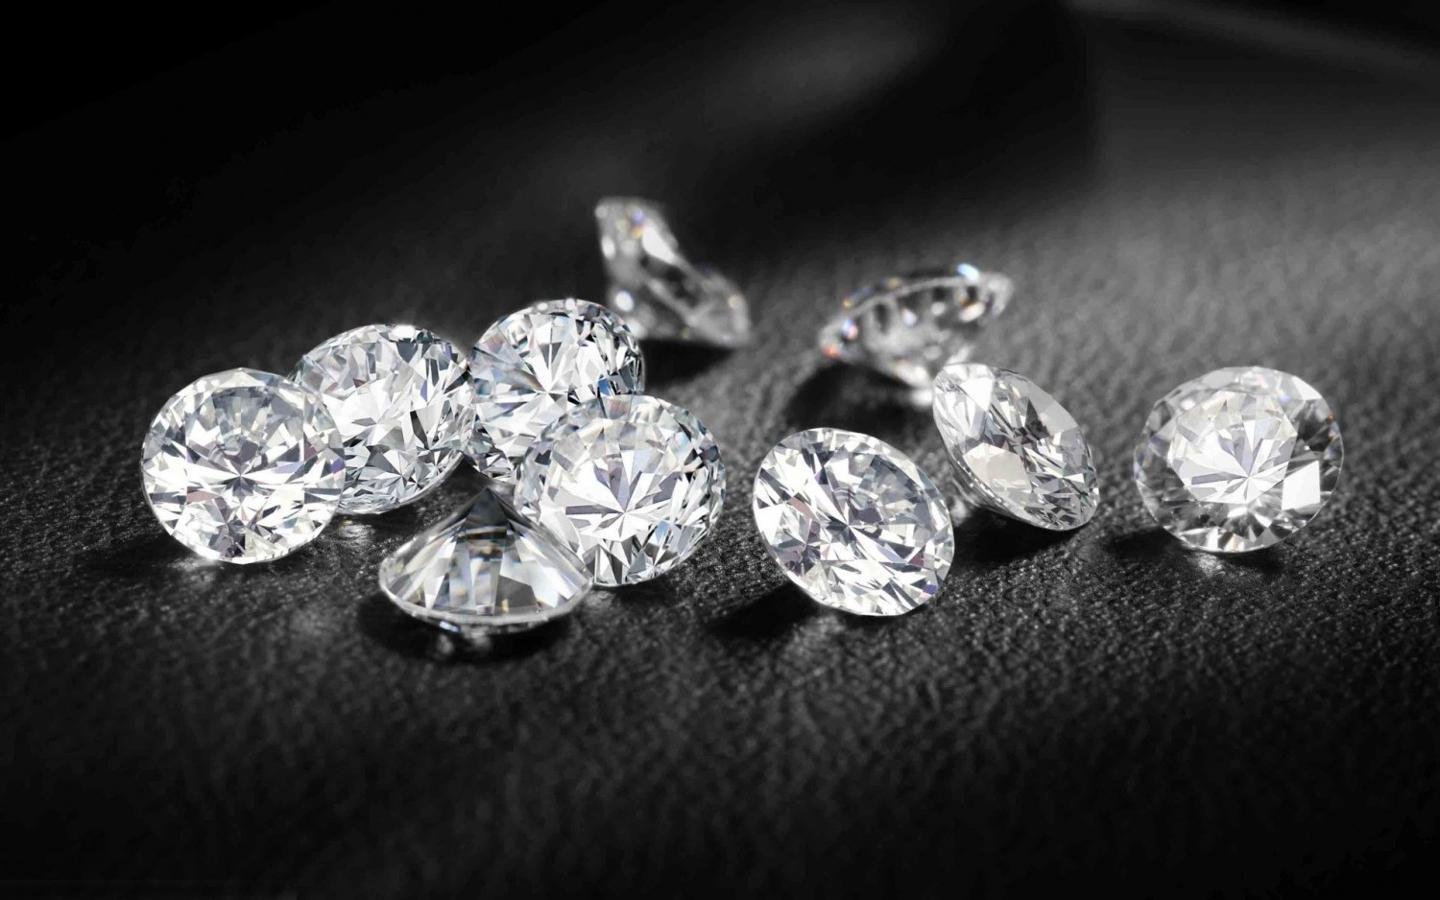 Acheter des diamants et des bijoux éthiques: la chaîne d'approvisionnement